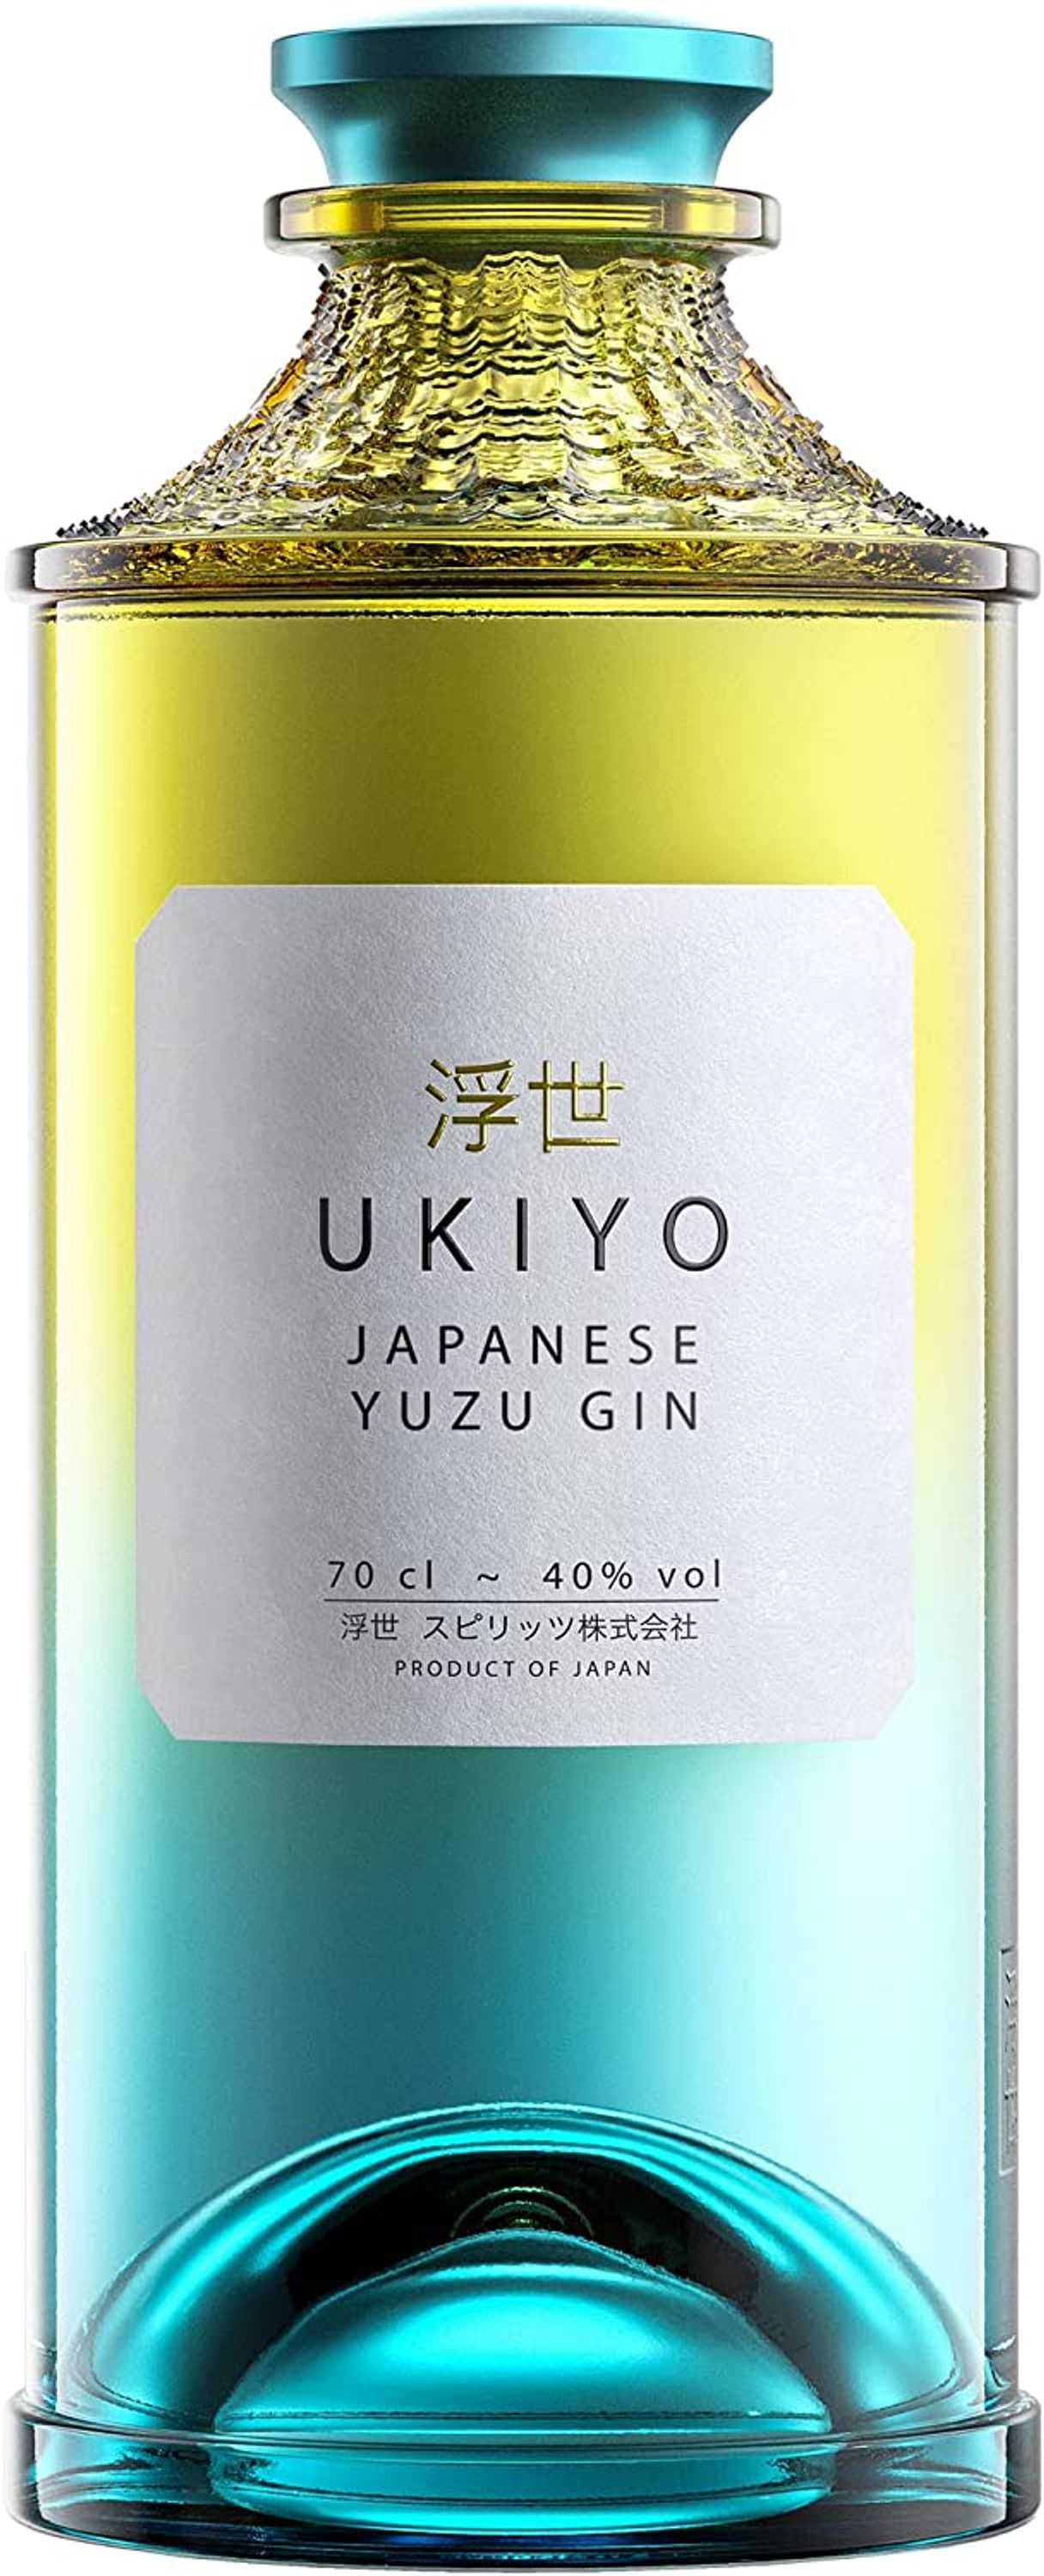 Ukiyo Japanese Yuzu Gin 0.7l, alc. 40% vol gin Japan